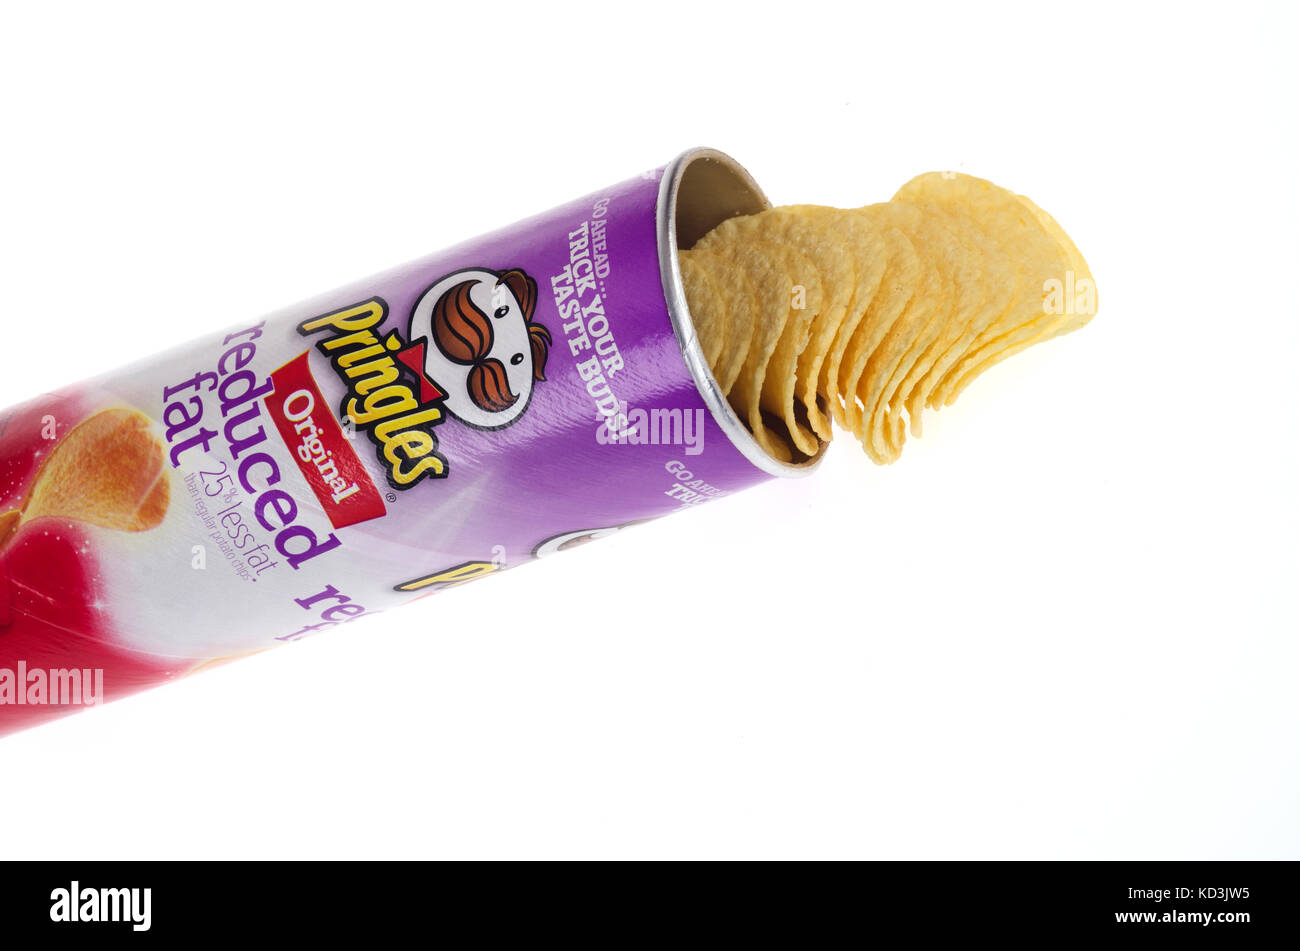 Ouvrir boîte de chips Pringles Original réduite en gras sur fond blanc dentelle, USA Banque D'Images